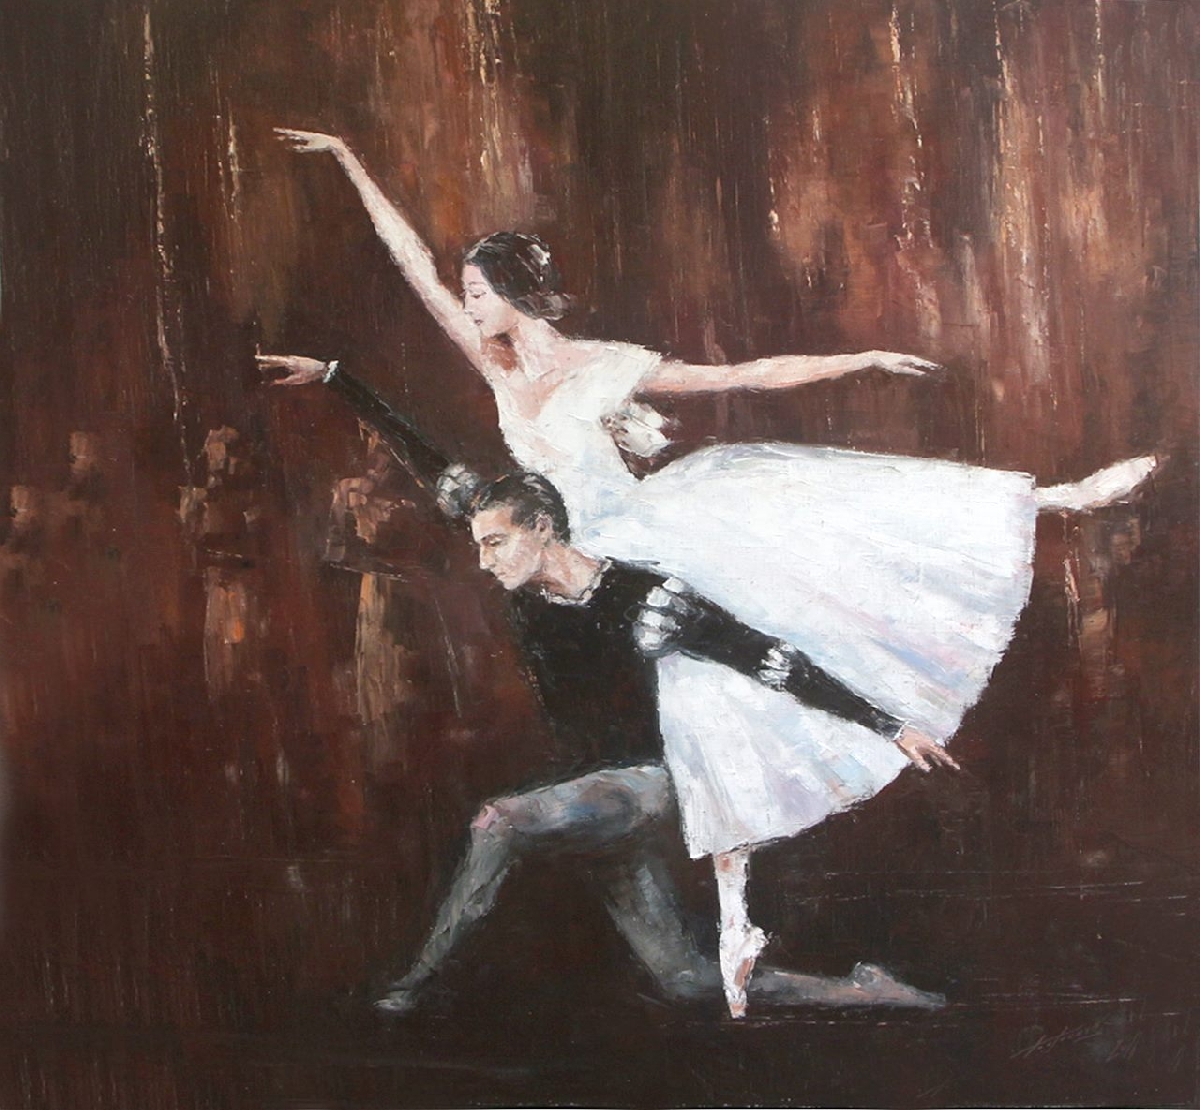 Выставка картин Евгения Баранова «Живопись танца»